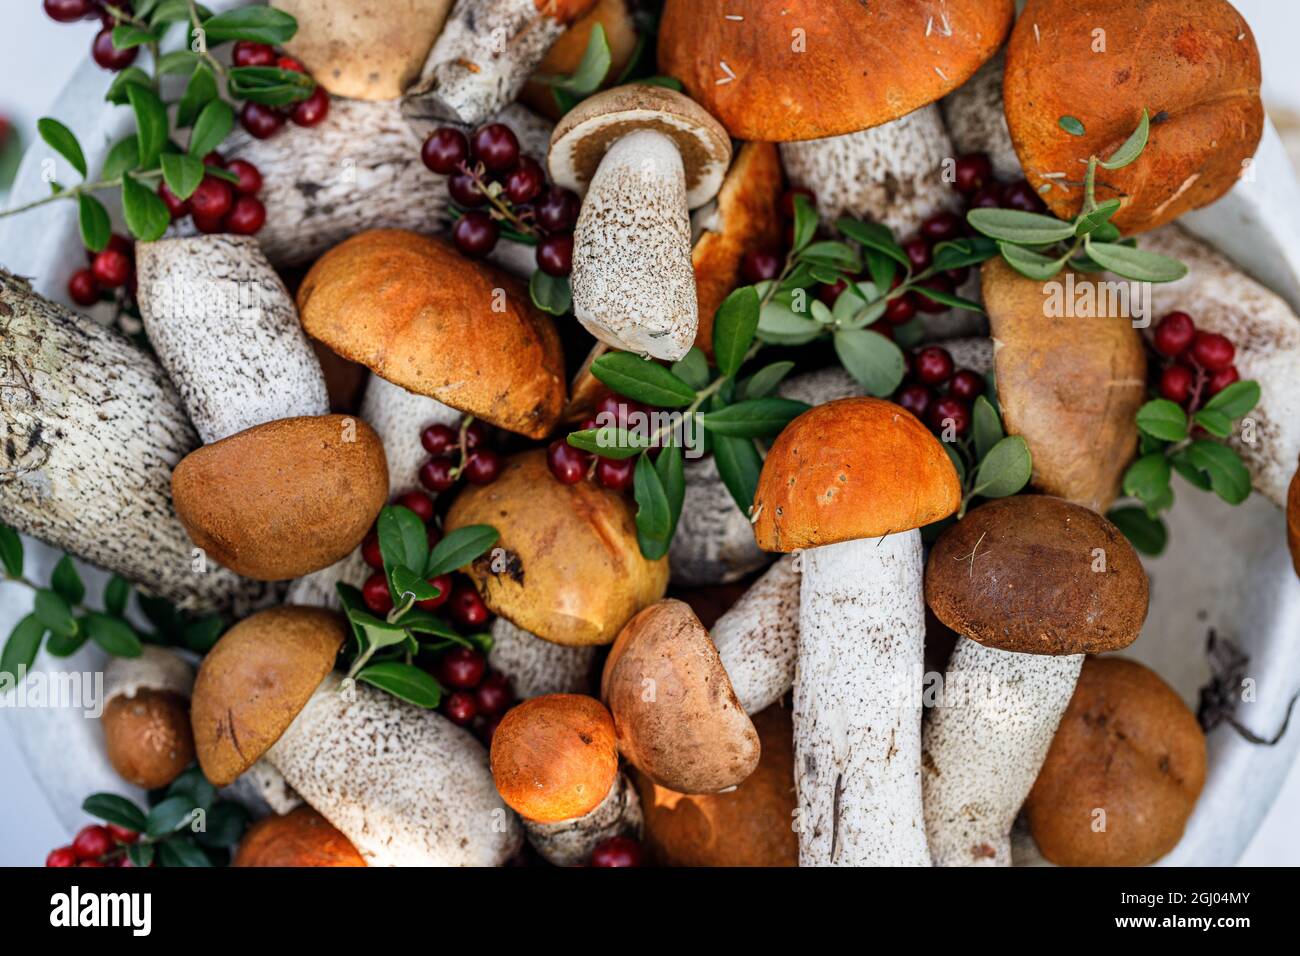 Orange Steinpilze und Preiselbeere in Eimern auf rustikalem Hintergrund. Sammeln von Wildpilzen und Beeren im Wald. Herbstsaison des edib Stockfoto